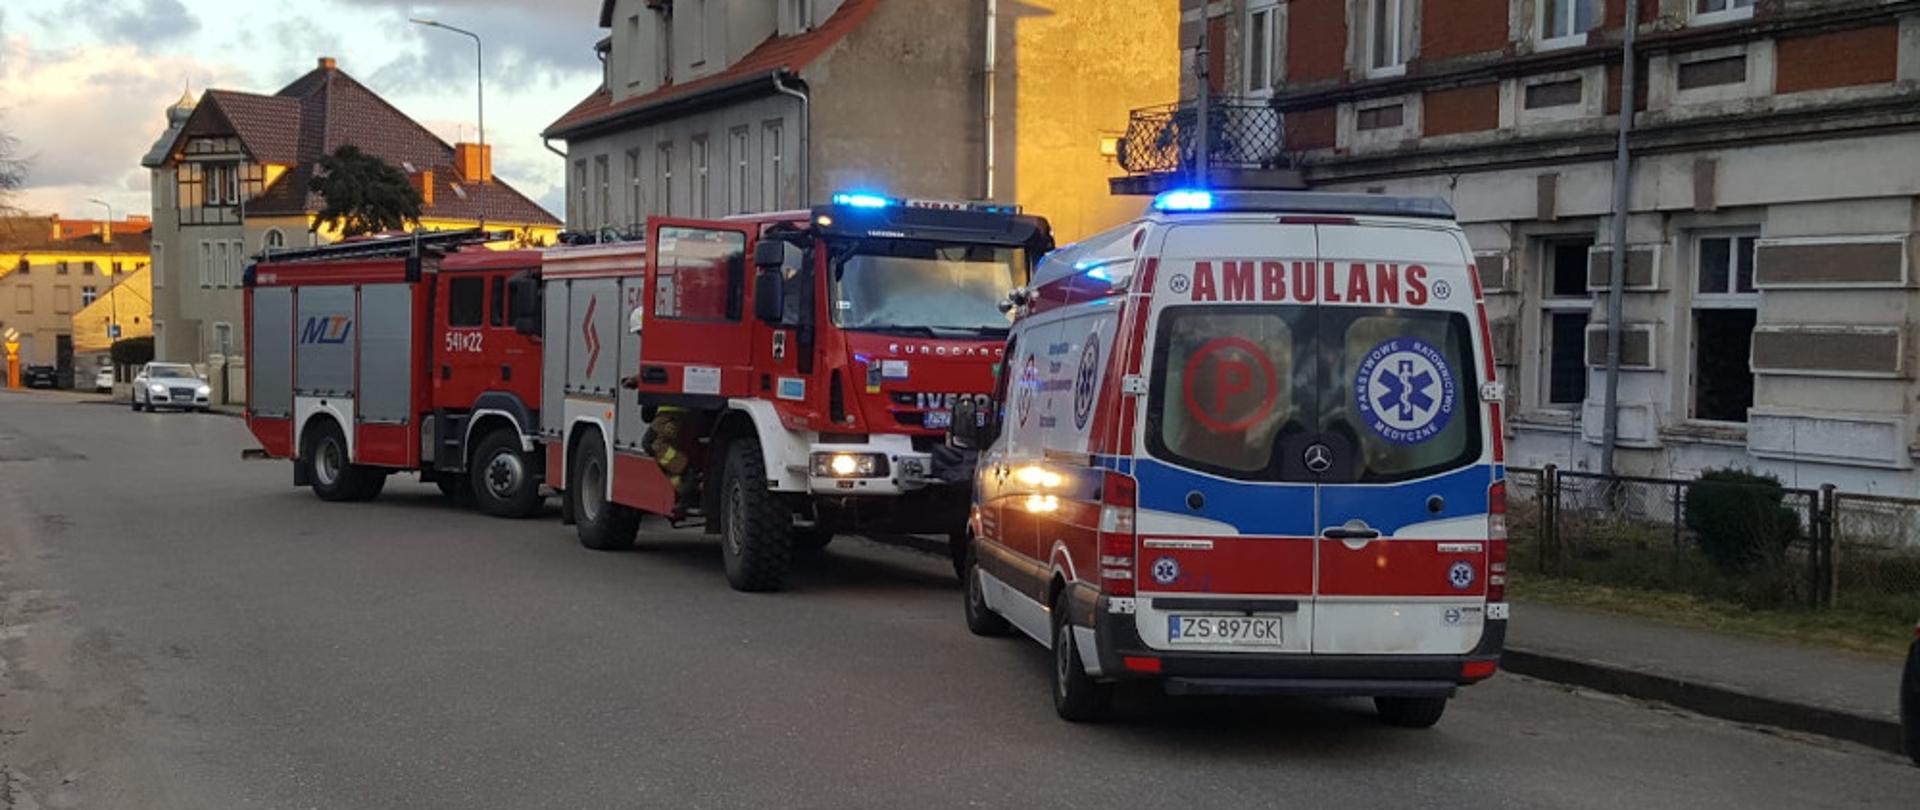 Pożar mieszkania w miejscowości Barwice - dwa samochody pożarnicze koloru czerwonego i karetka koloru białego stoją na jezdni przed kamienicą.